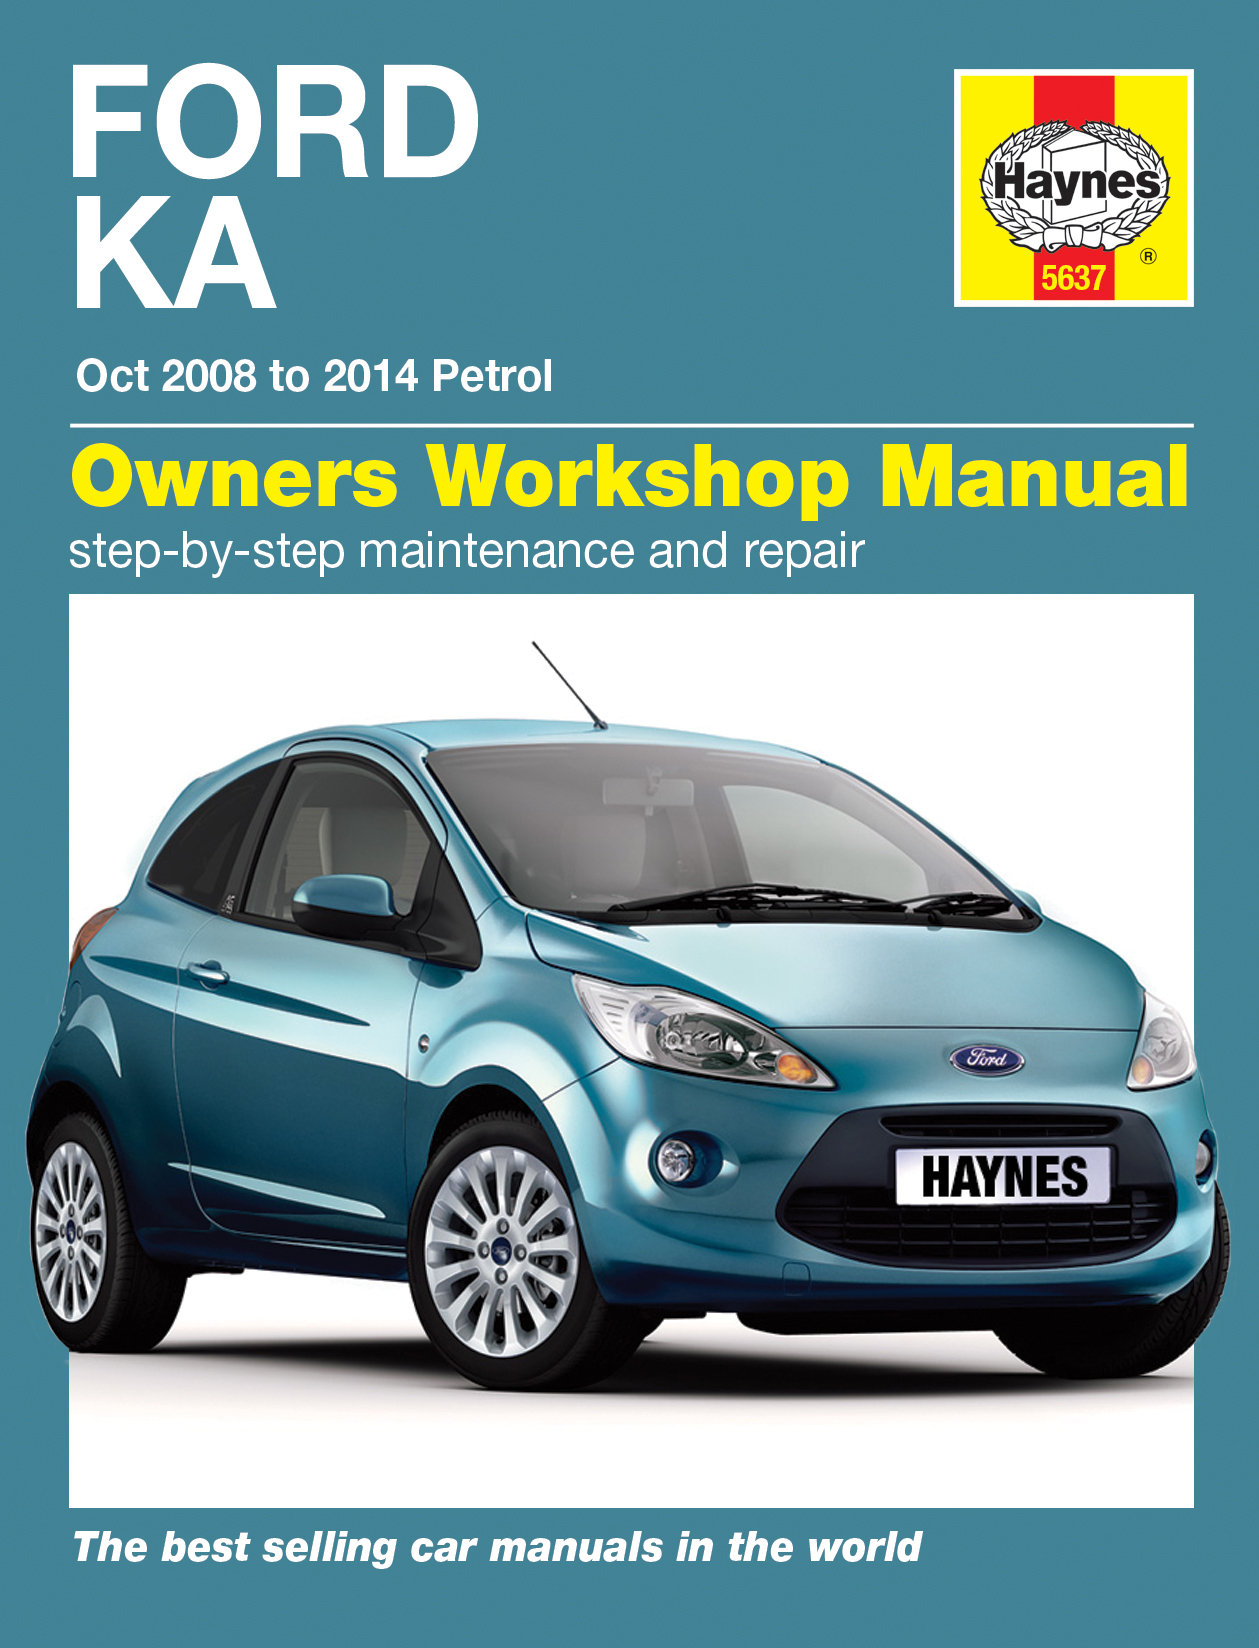 Haynes ford c-max owners workshop manual #2